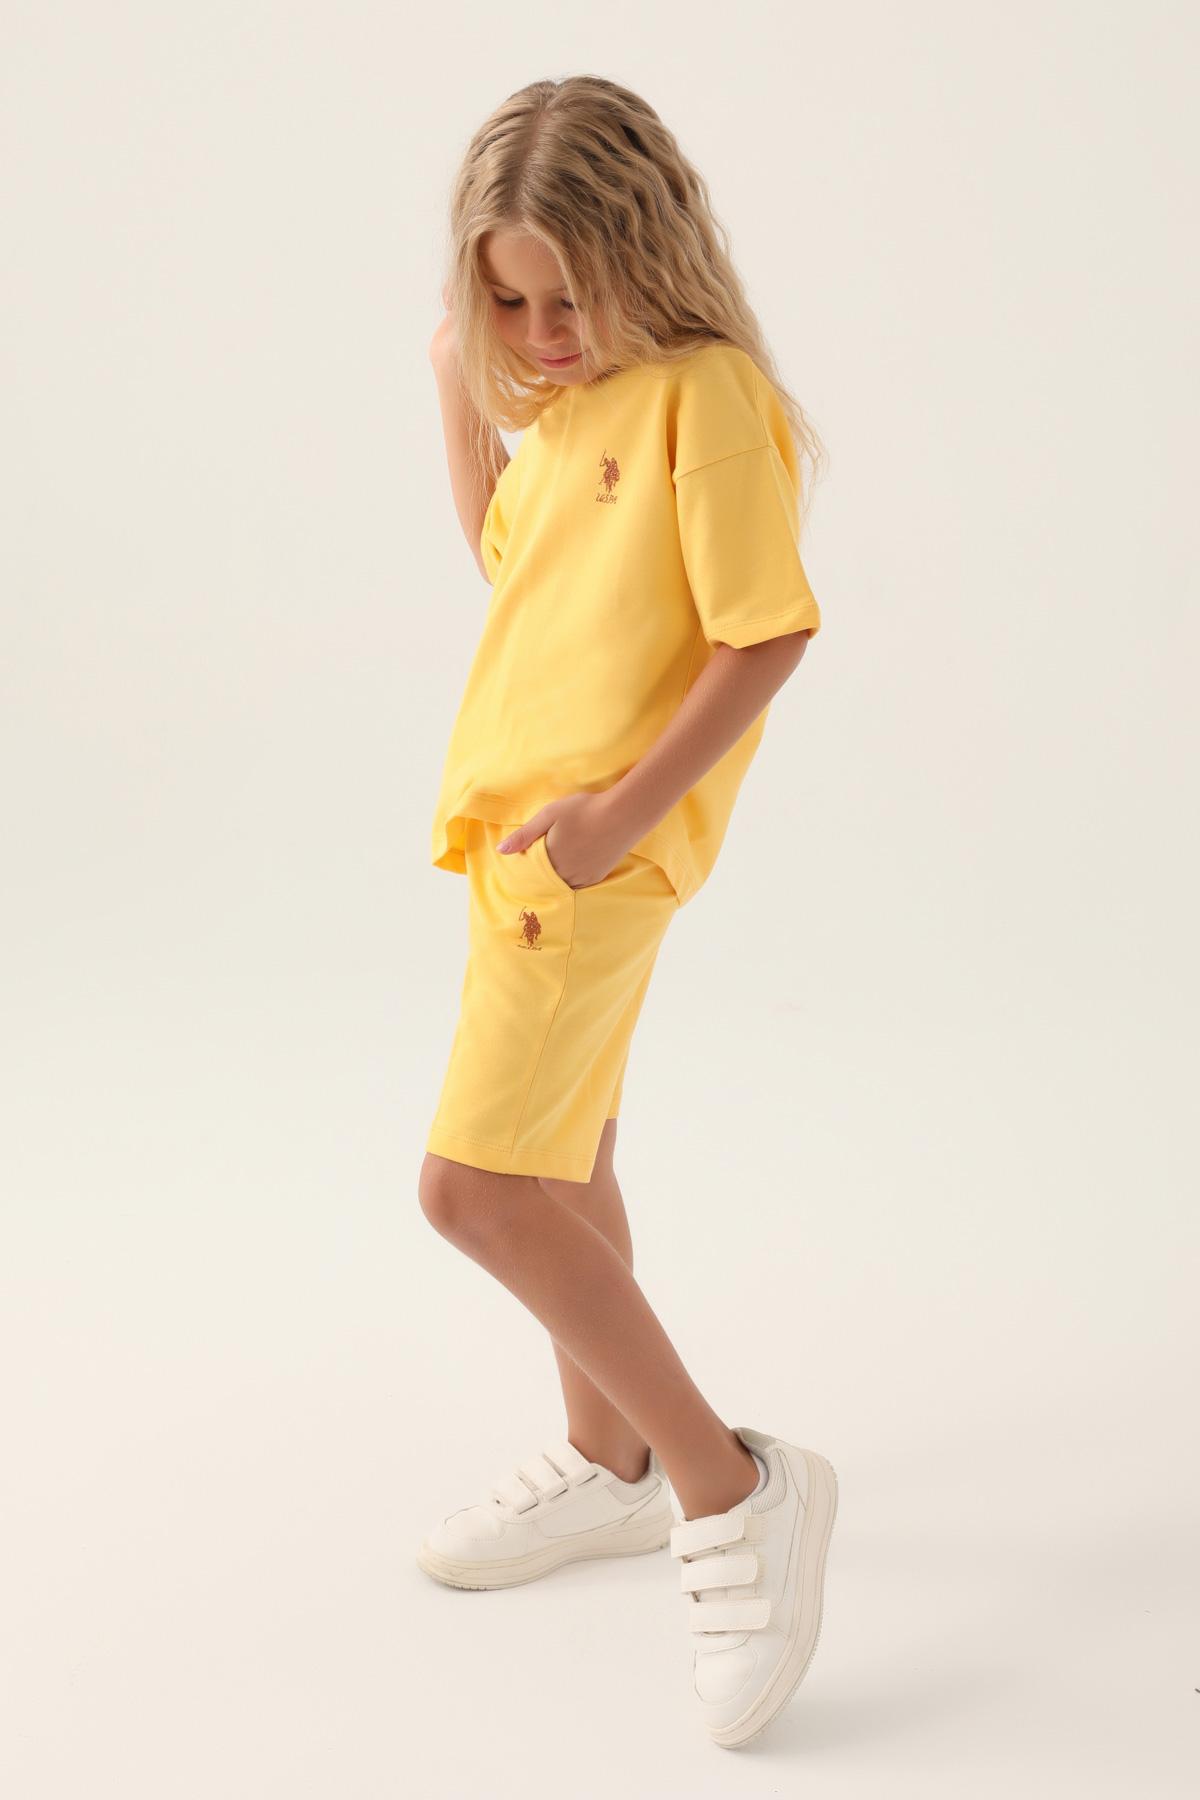 Selected image for U.S. Polo Assn. Komplet za devojčice US1822-G, Žuti